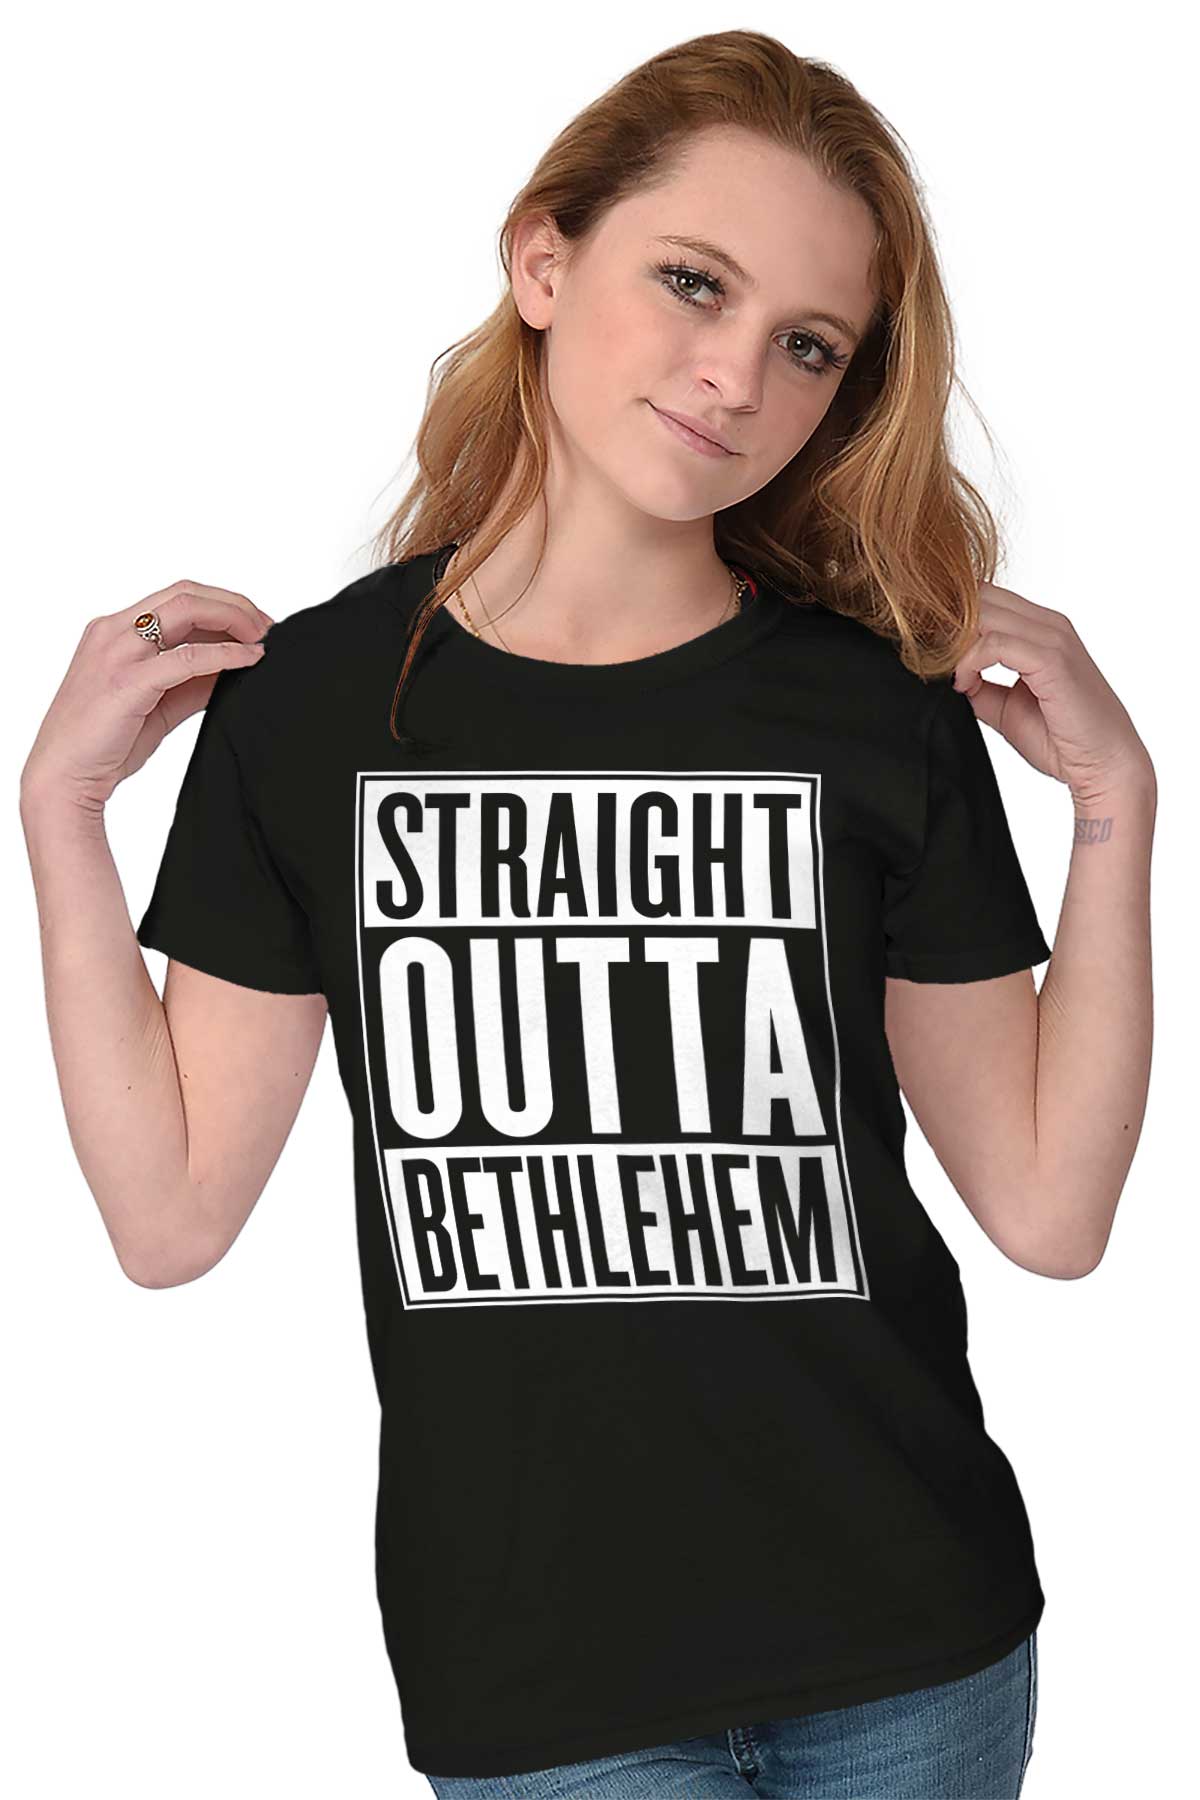 Outta Bethlehem Tee | – Christian Strong